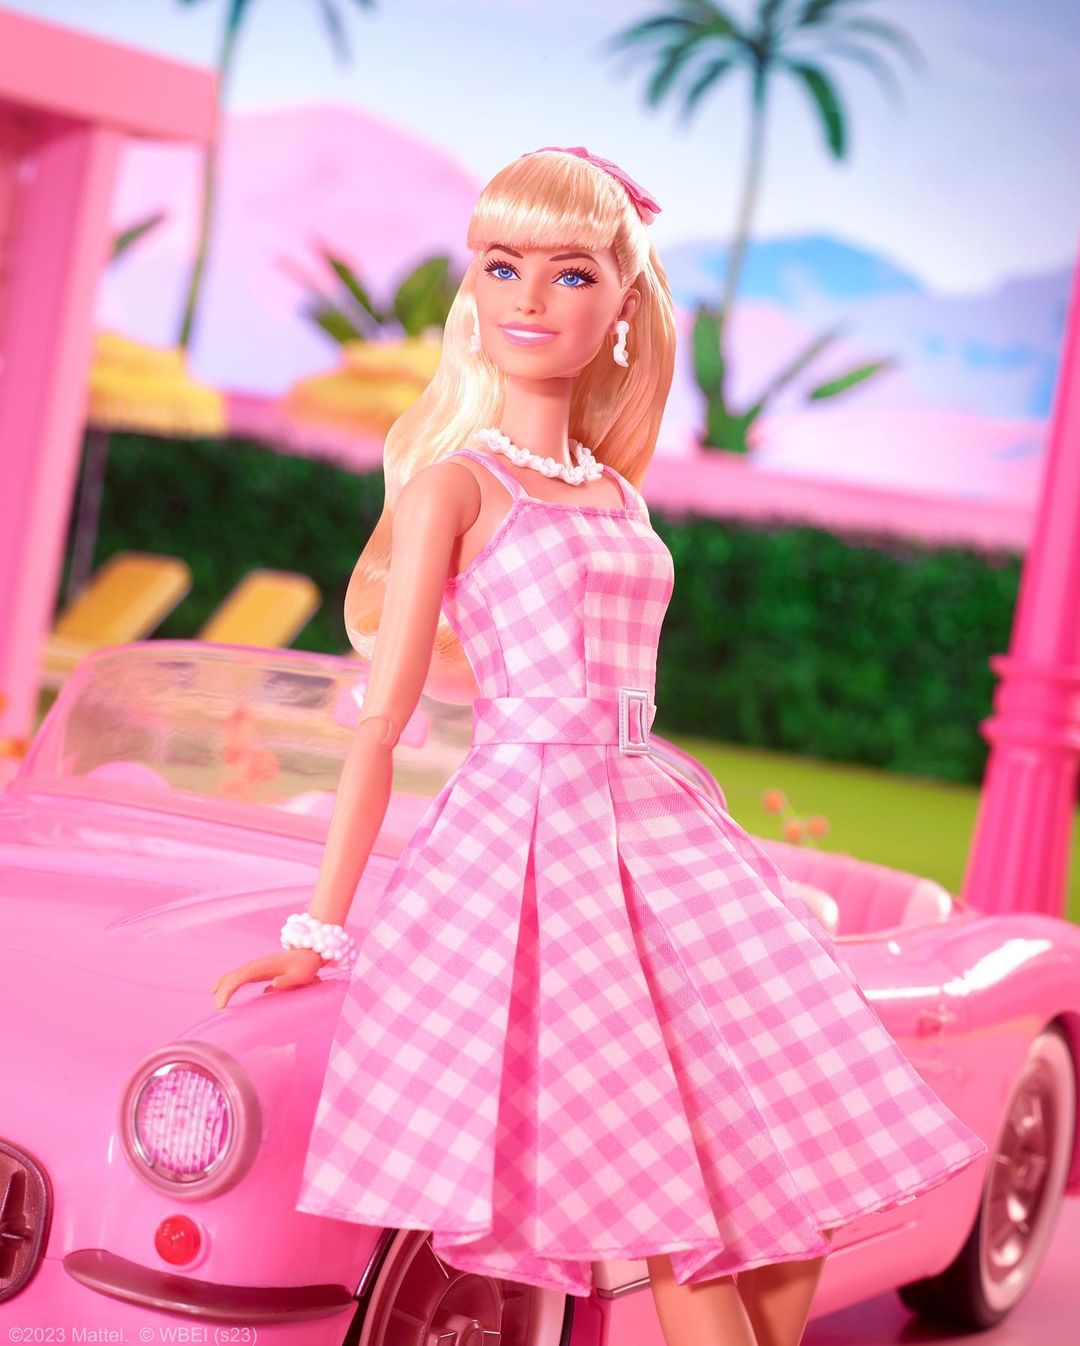 In 1963, she left Minneapolis for Mattel. She designed Barbie